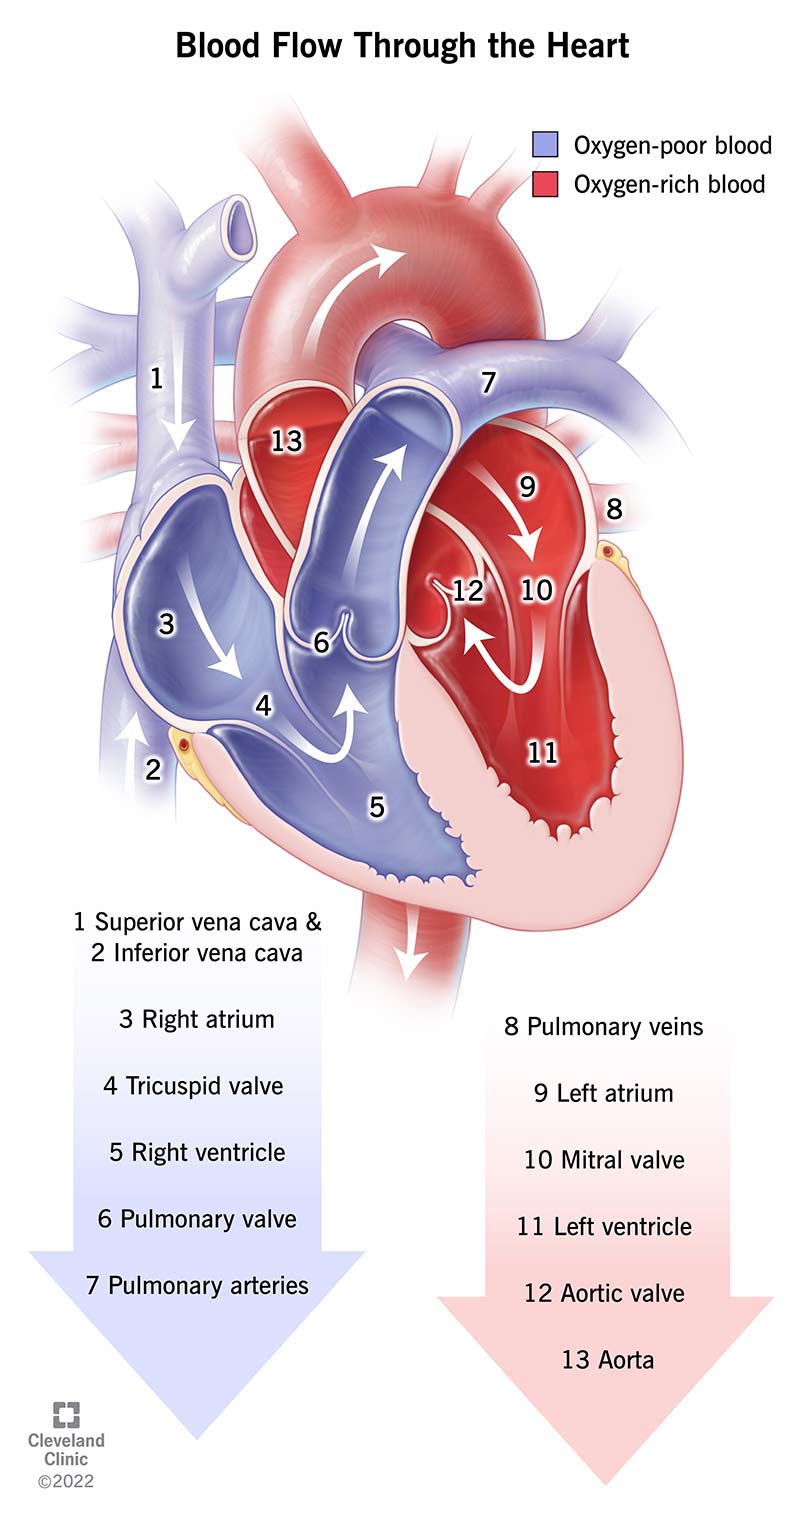 血液通过一系列的动脉、心室、静脉和瓣膜流经心脏。